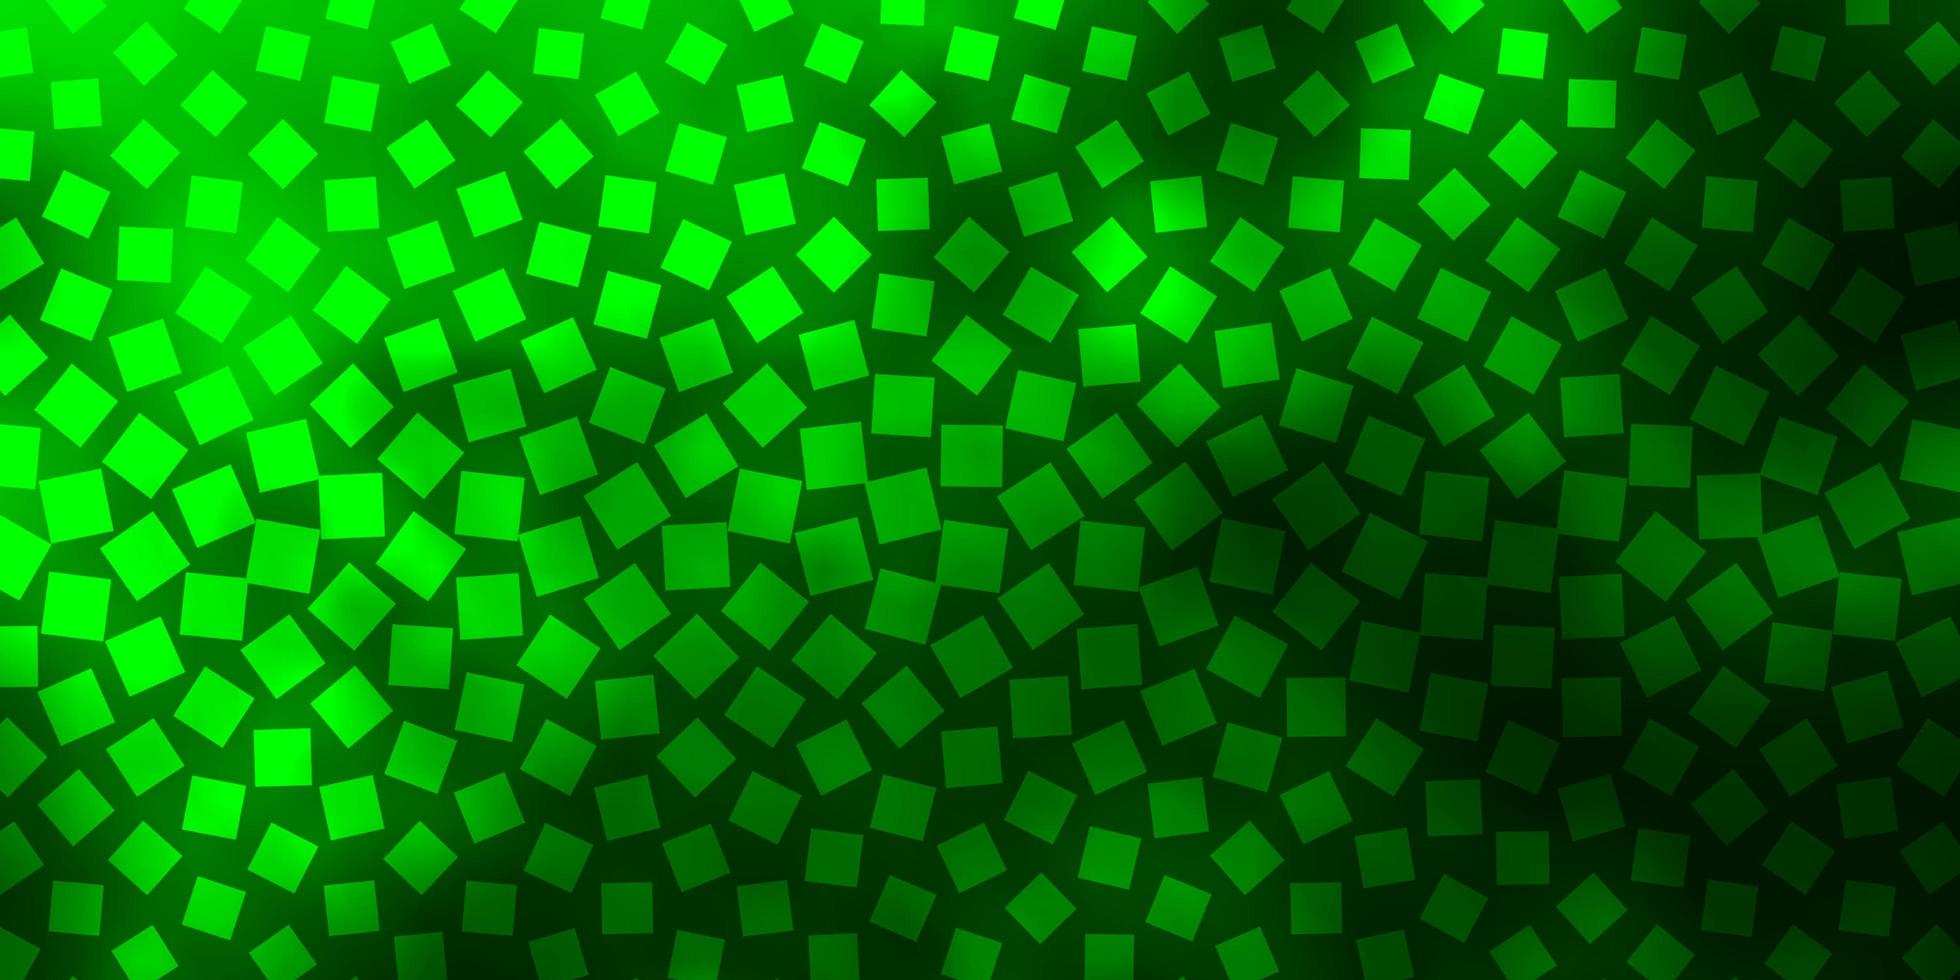 trama vettoriale verde scuro in stile rettangolare.